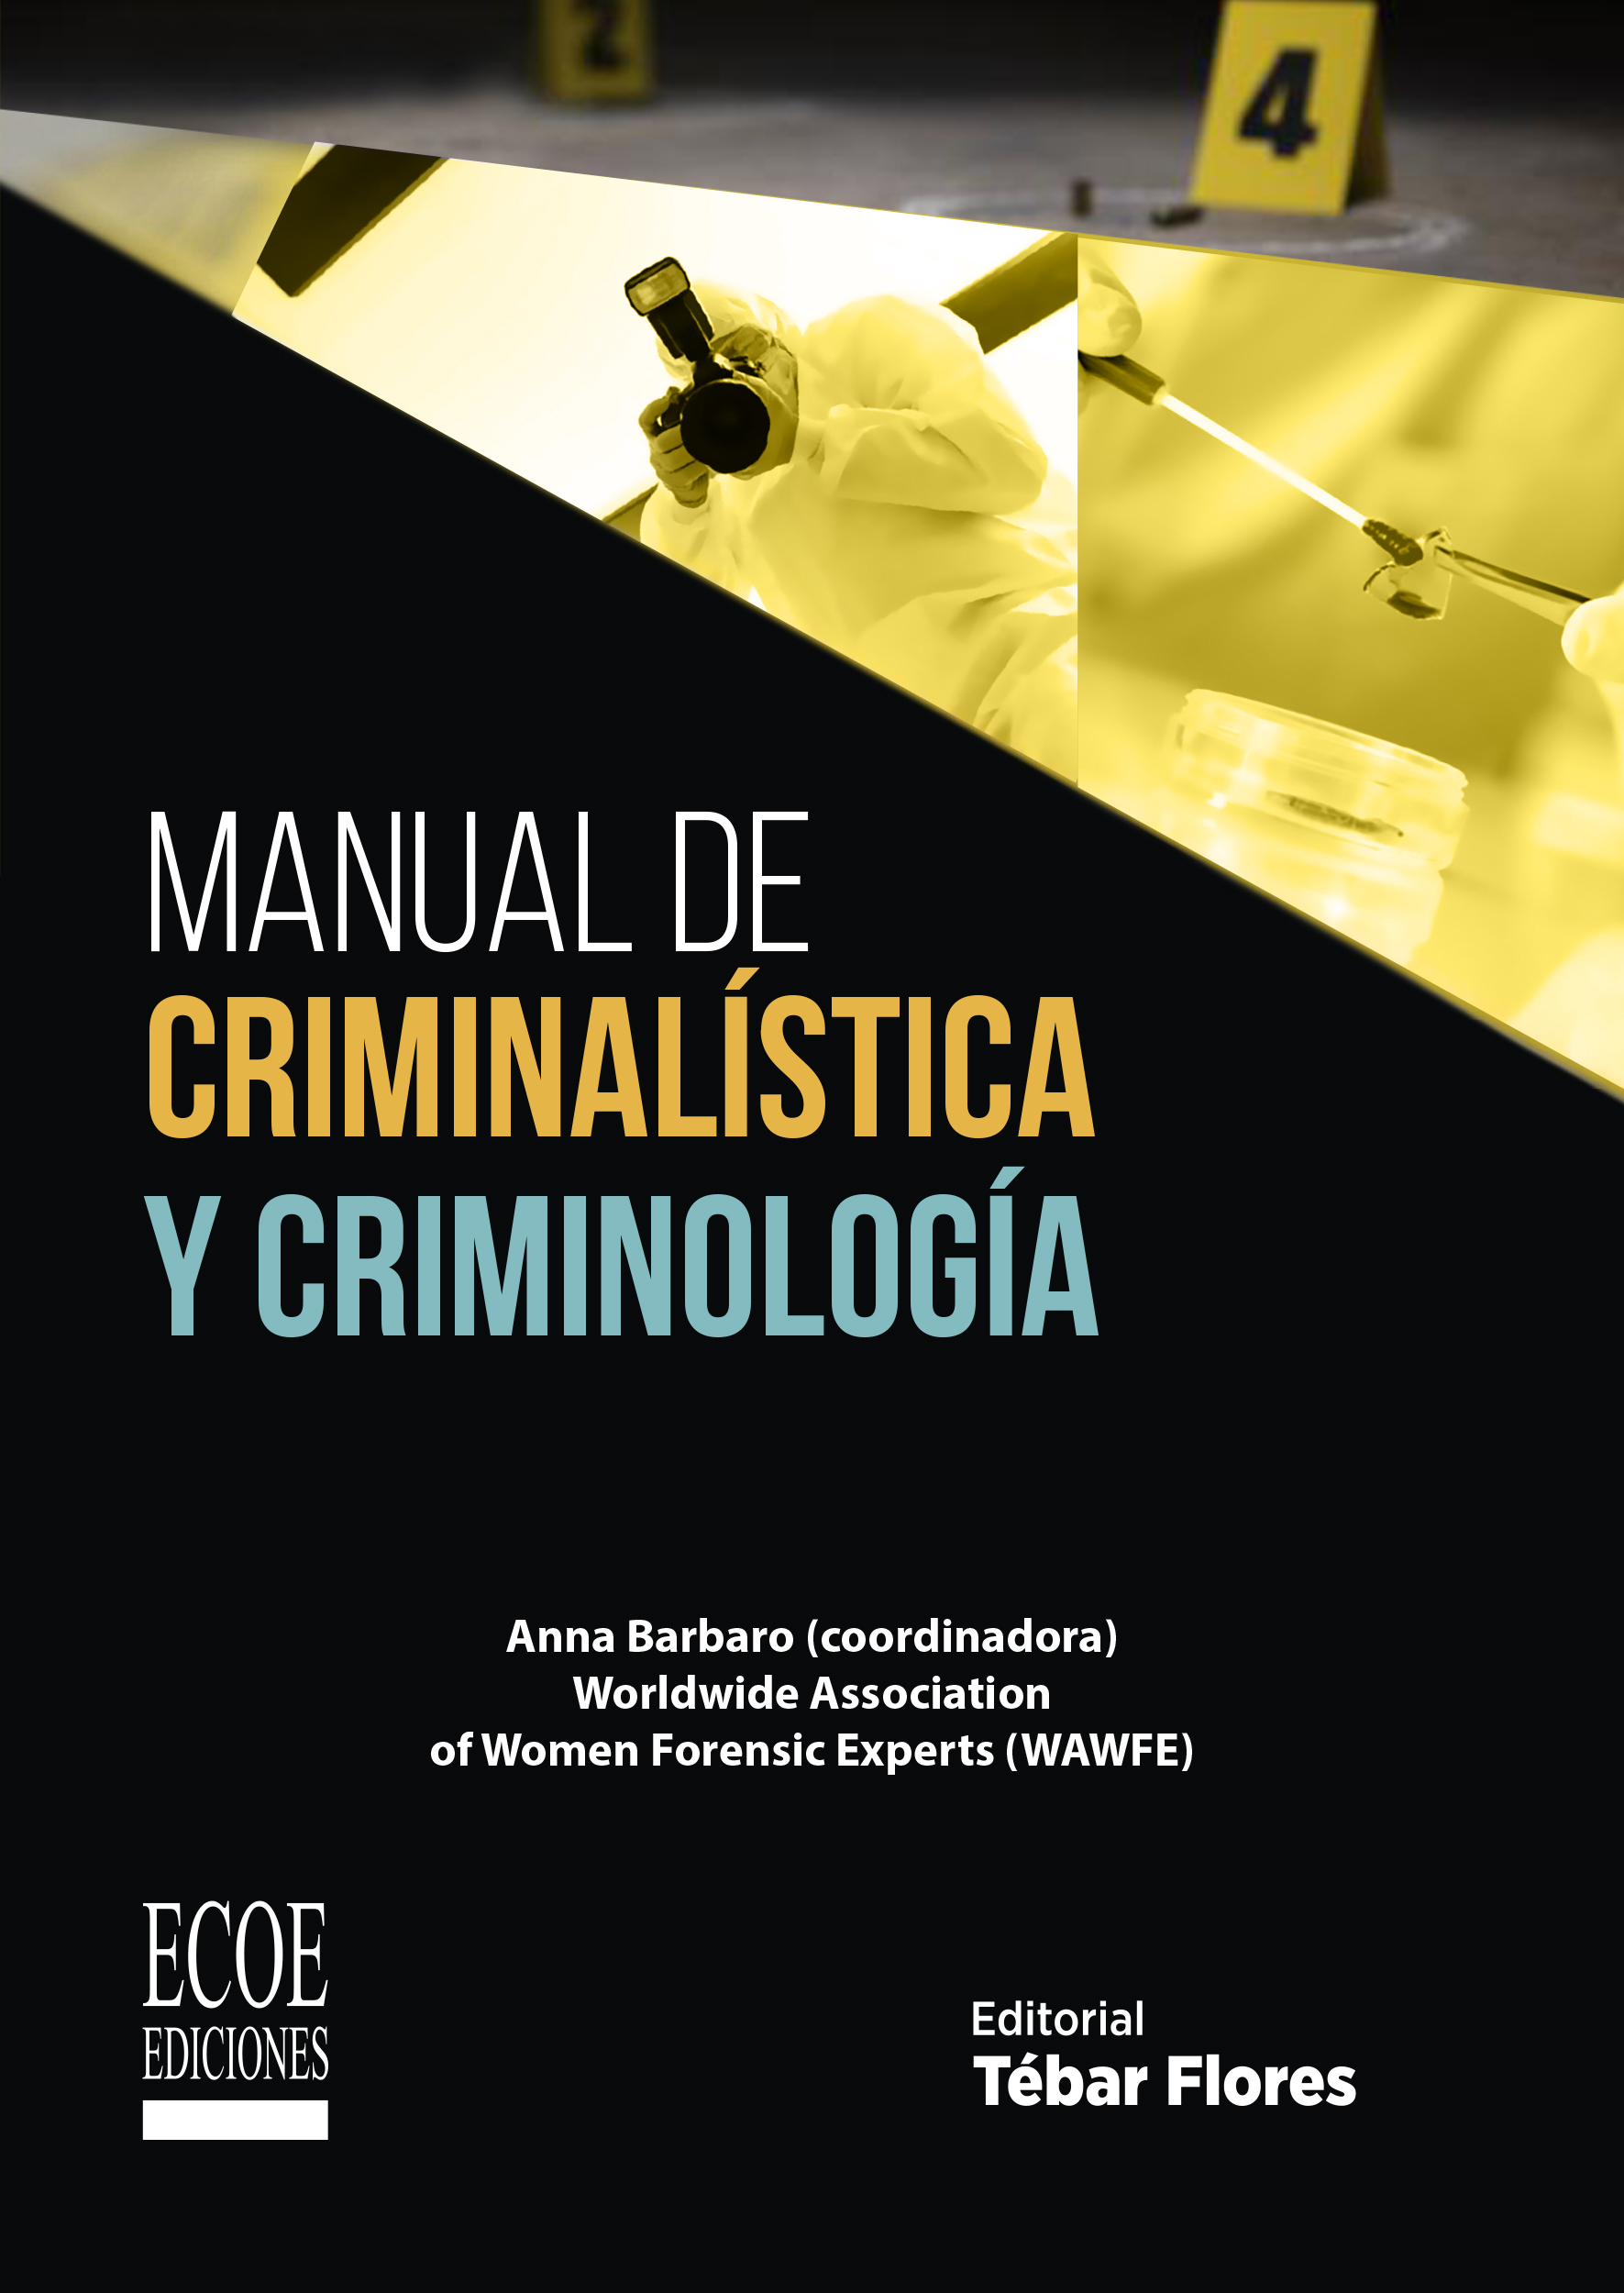 Un evento Saludar Torpe Manual de criminalística y criminología – Ecoe Ediciones